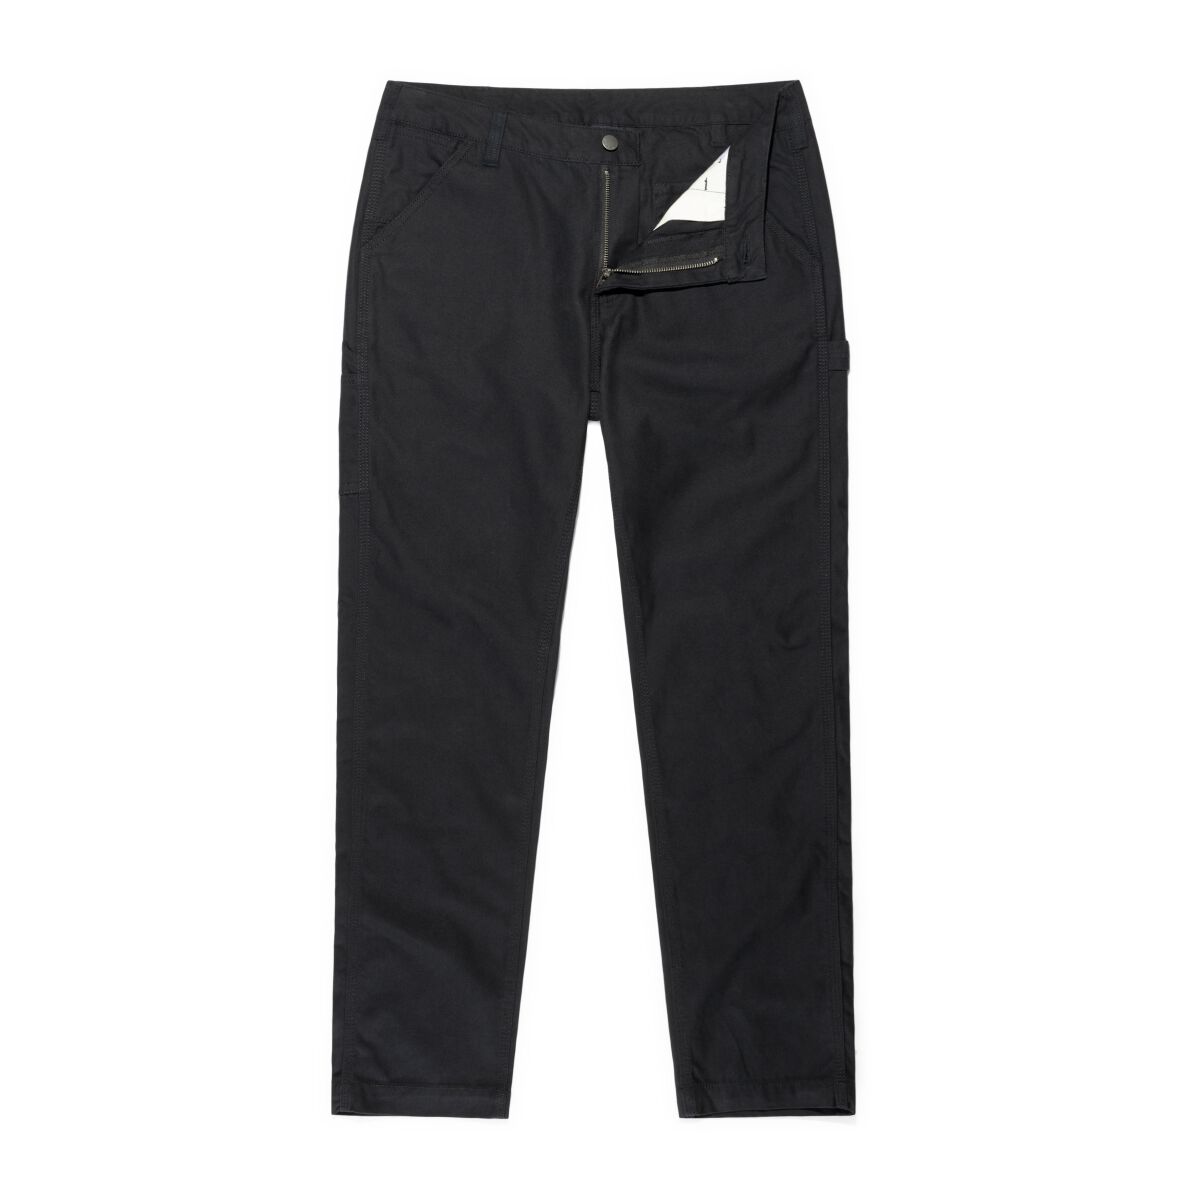 Vintage Industries Stoffhose - Cooper Pants - W32L32 bis W38L32 - für Männer - Größe W32L32 - schwarz